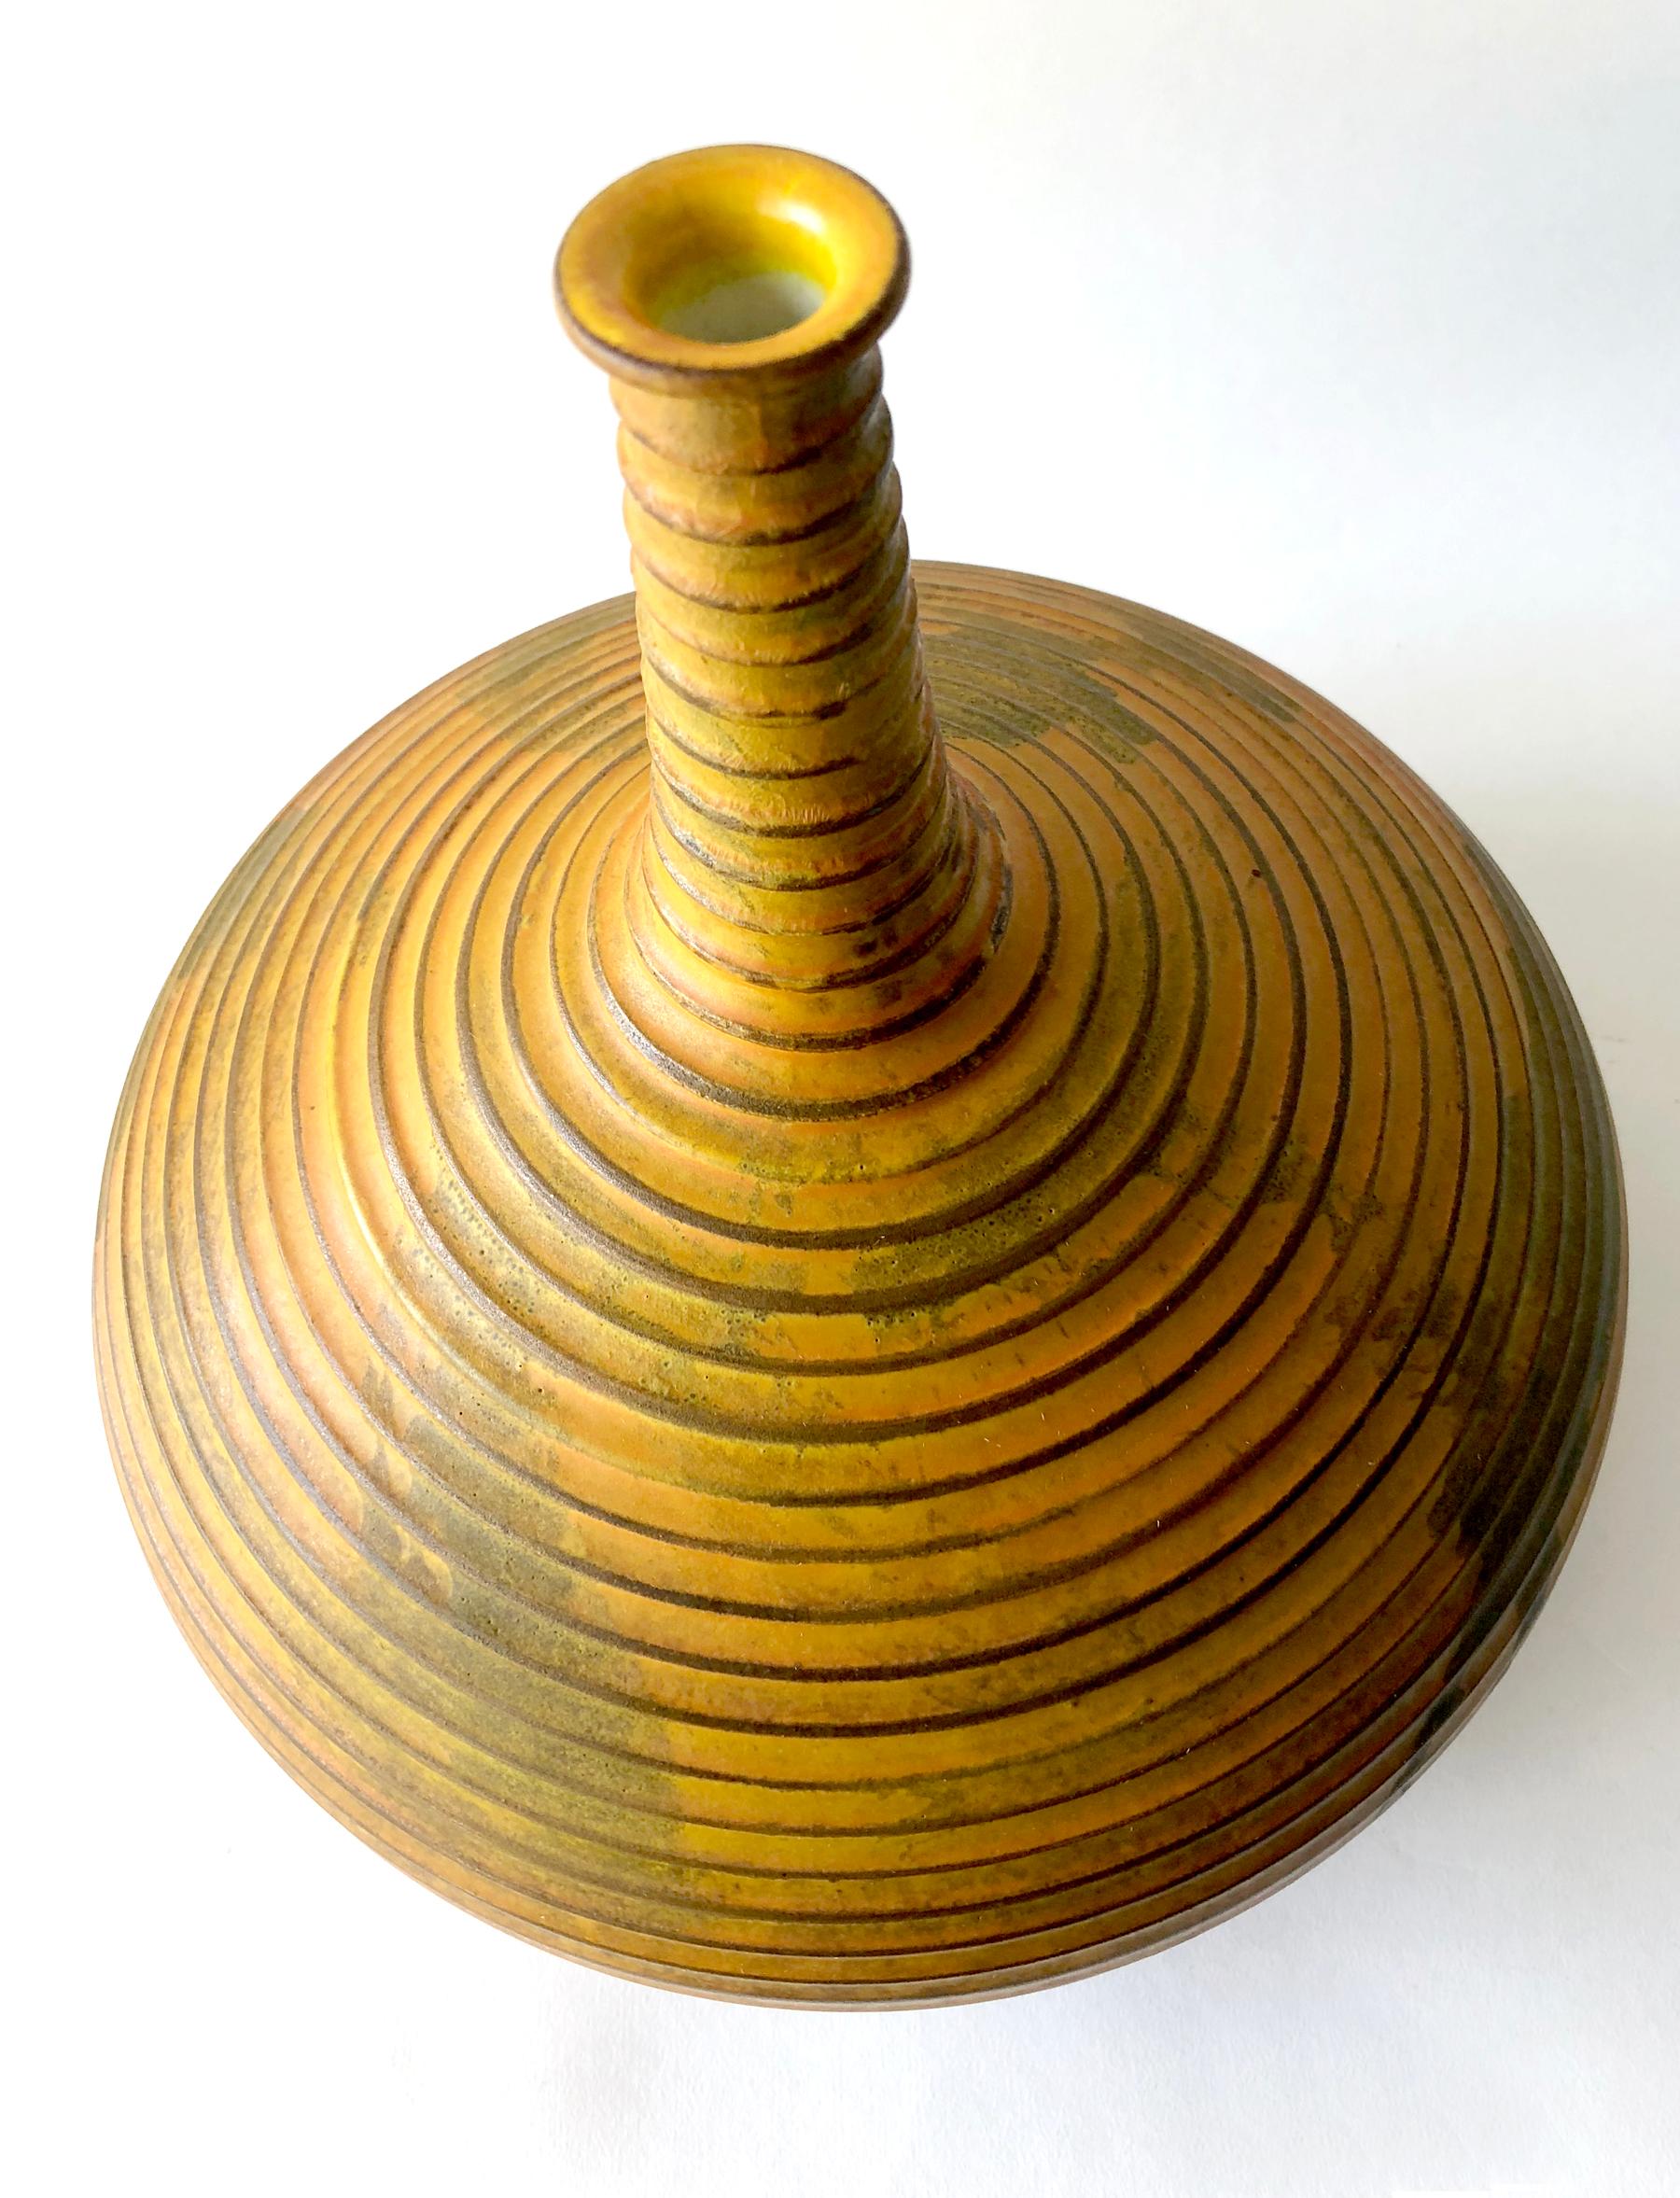 Large, ribbed genie bottleneck vase by Raymor, Italy. Vase measures 10.5